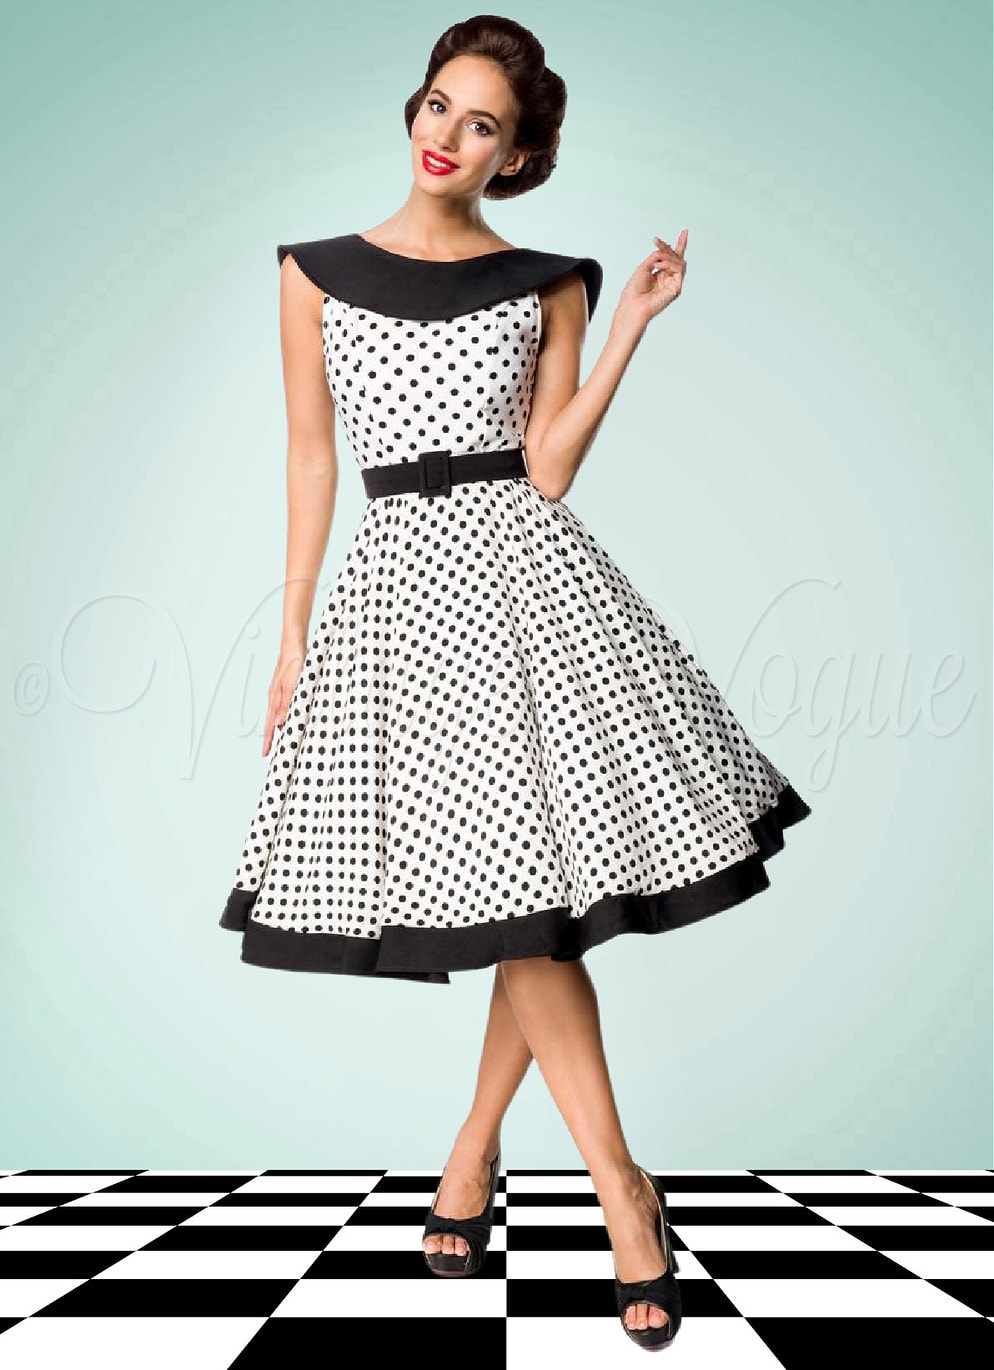 Belsira 50er Jahre Vintage Retro Swing Kleid mit Polka Punkte in Schwarz Weiß Petticoat Damen Damenkleid Rockabilly elegant Abendkleid Dots gepunktet tupfen Jive Lindy Hop